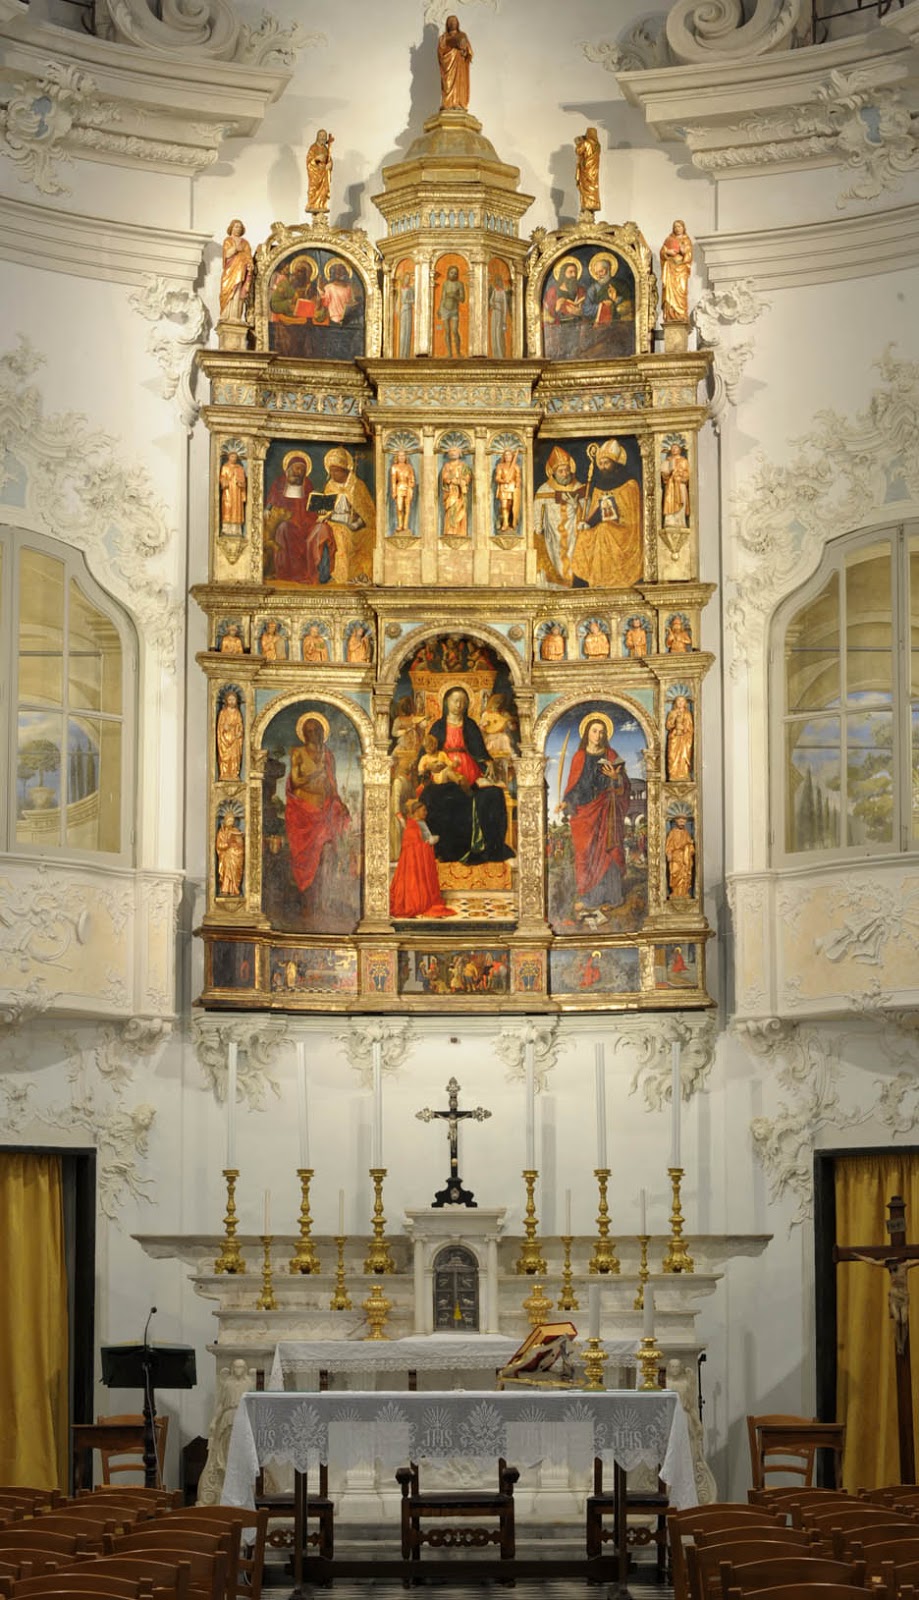 Vincenzo Foppa and Ludovico Brea, Polittico della Rovere (1489-1490; tempera on panel; Savona, Nostra Signora di Castello)